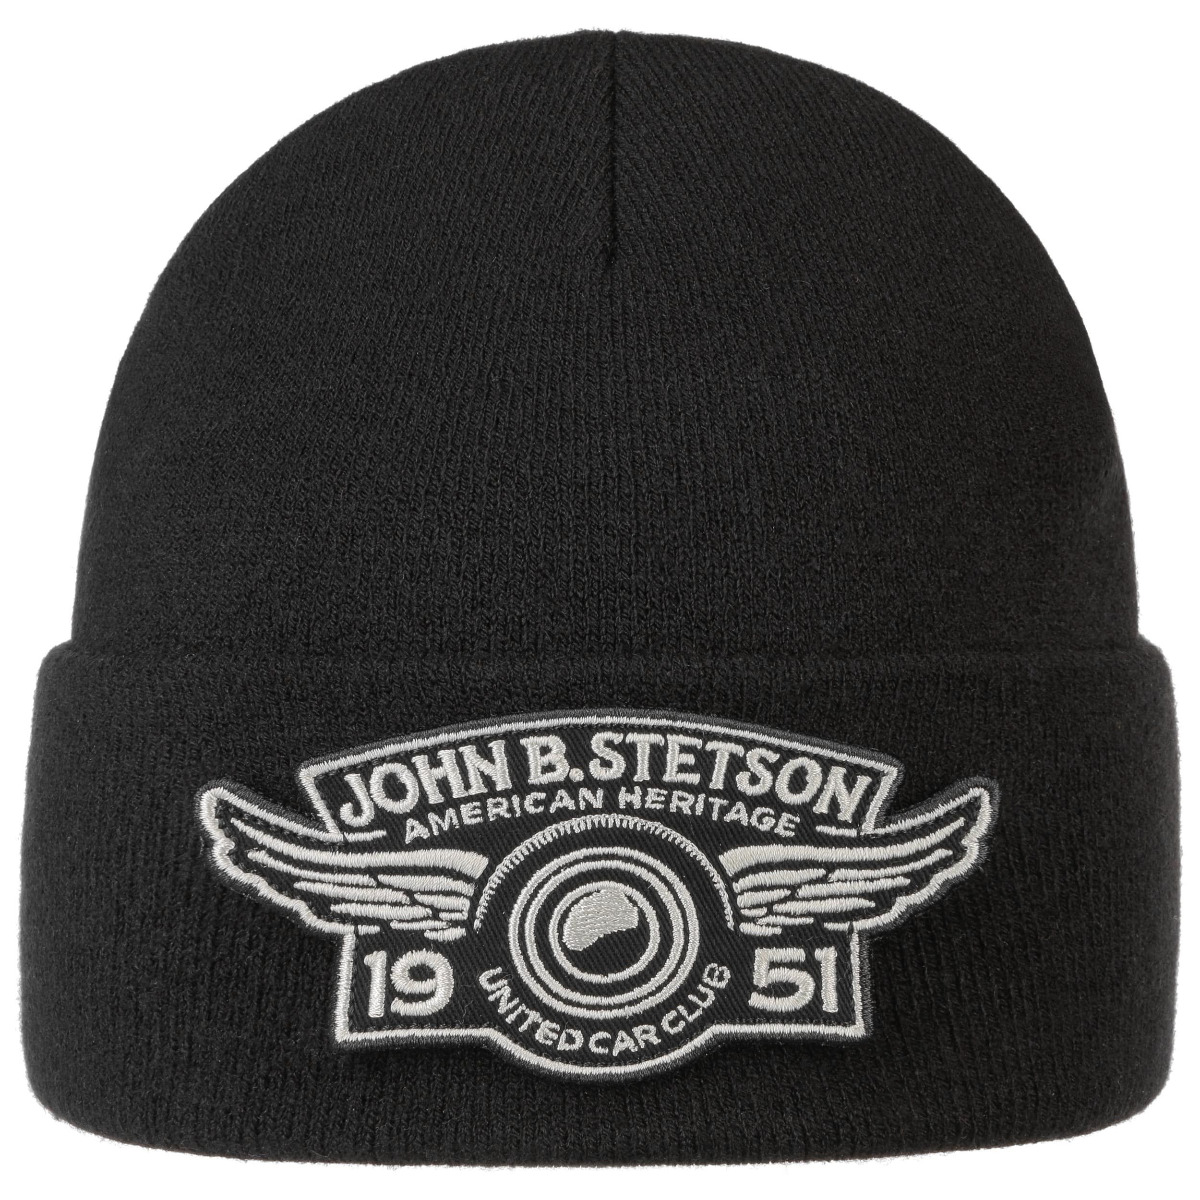 Stetson Car Club Beanie Hat Black